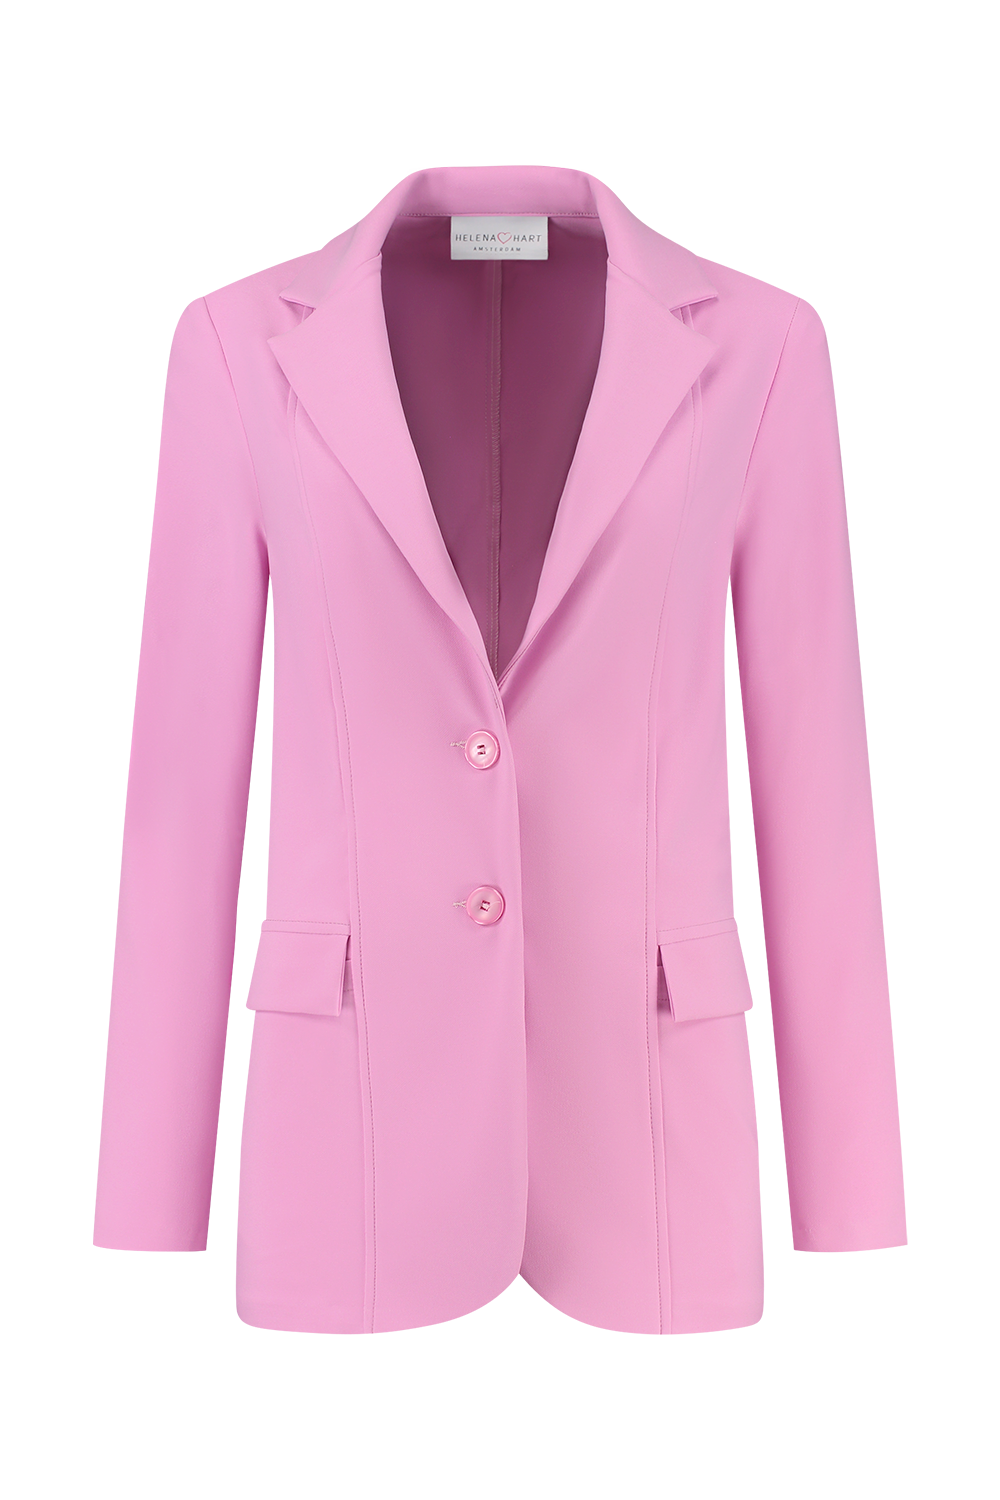 Helena Hart 7520 blazer comfort pink